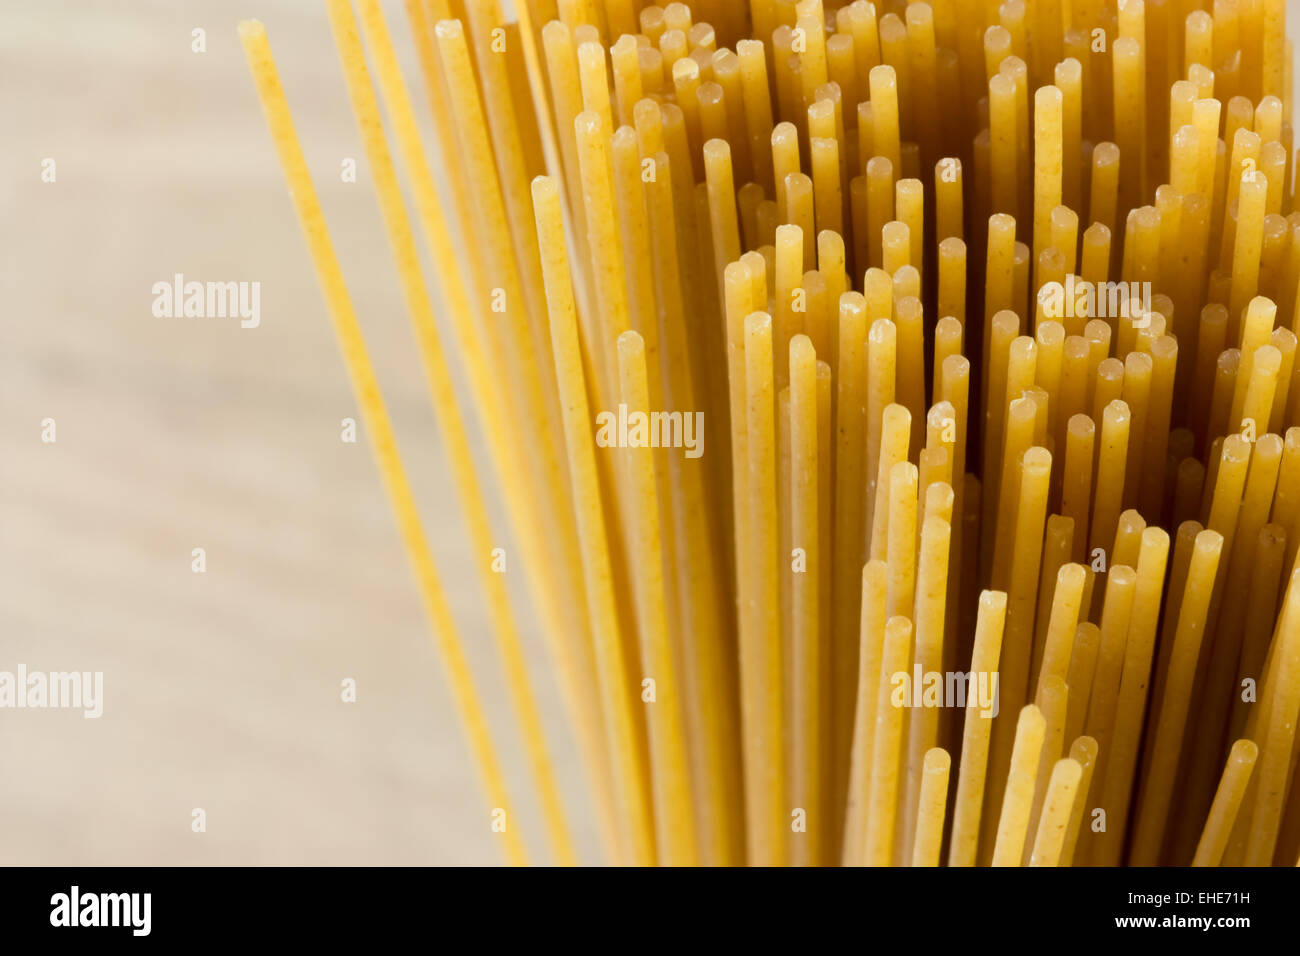 Vollkorn Spaghetti - Wholemeal Pasta Stock Photo